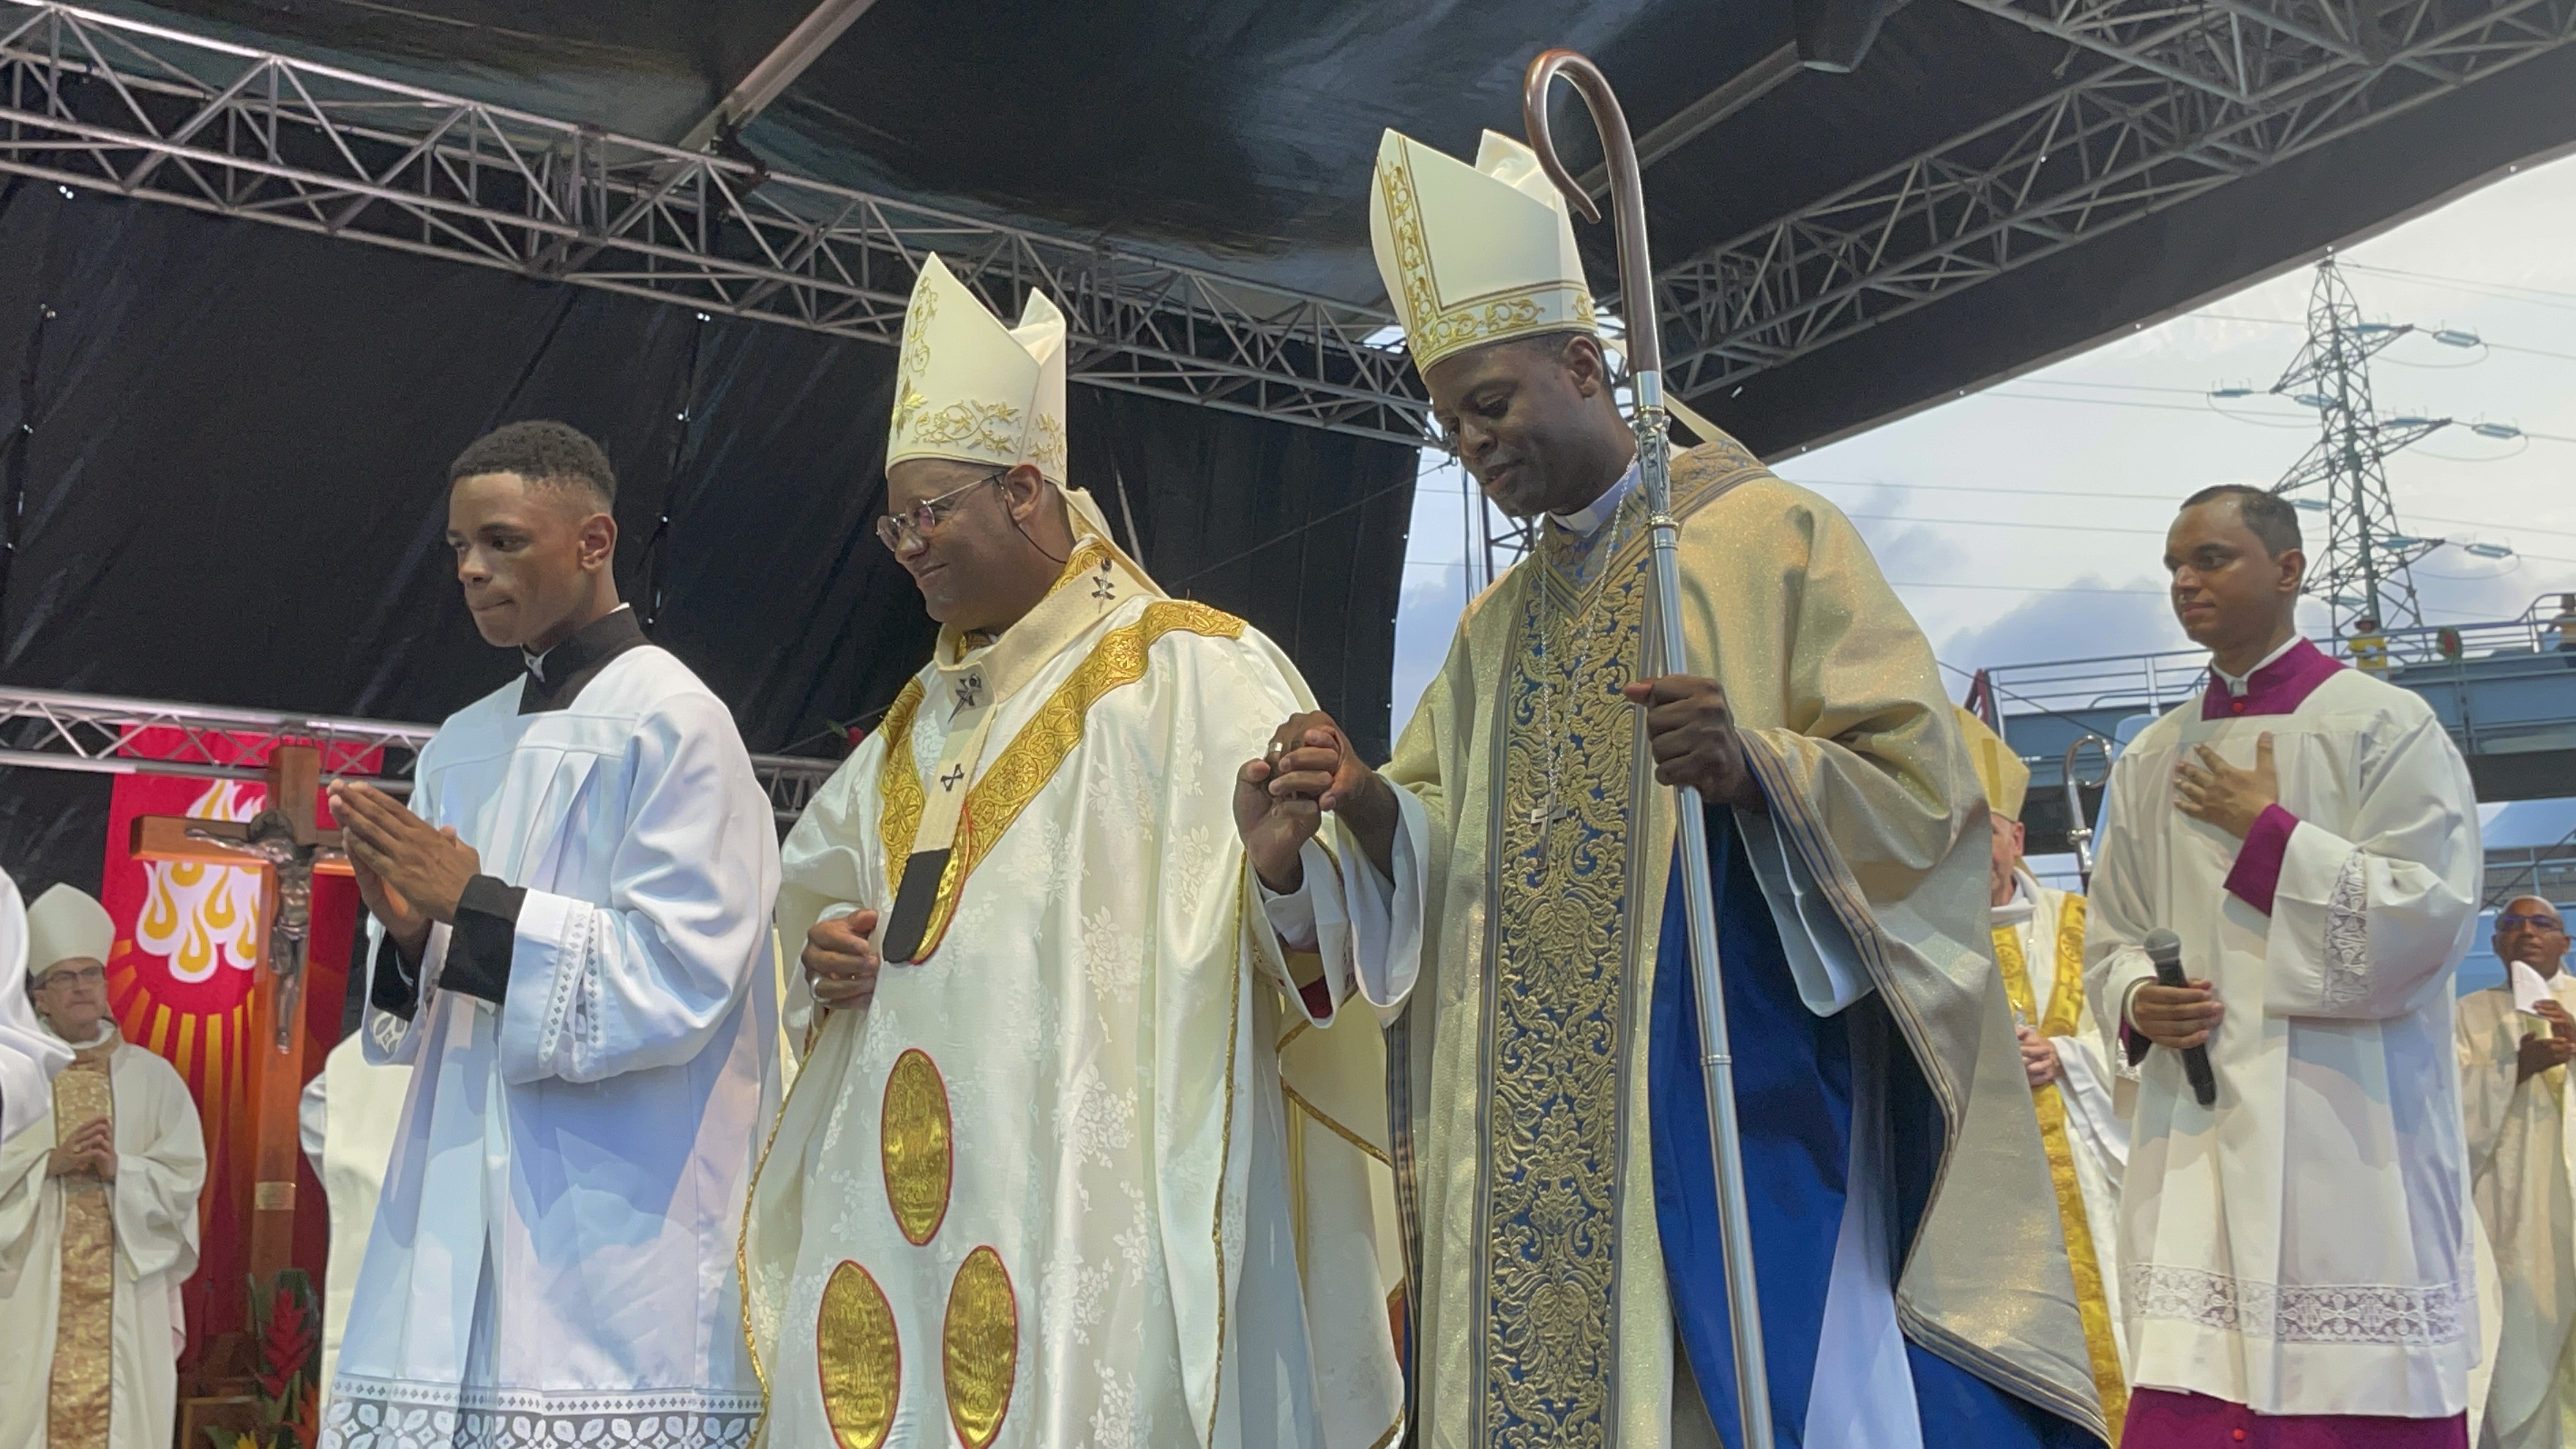     Bénédiction des couples homosexuels : quelle est la position des évêques aux Antilles-Guyane ?

